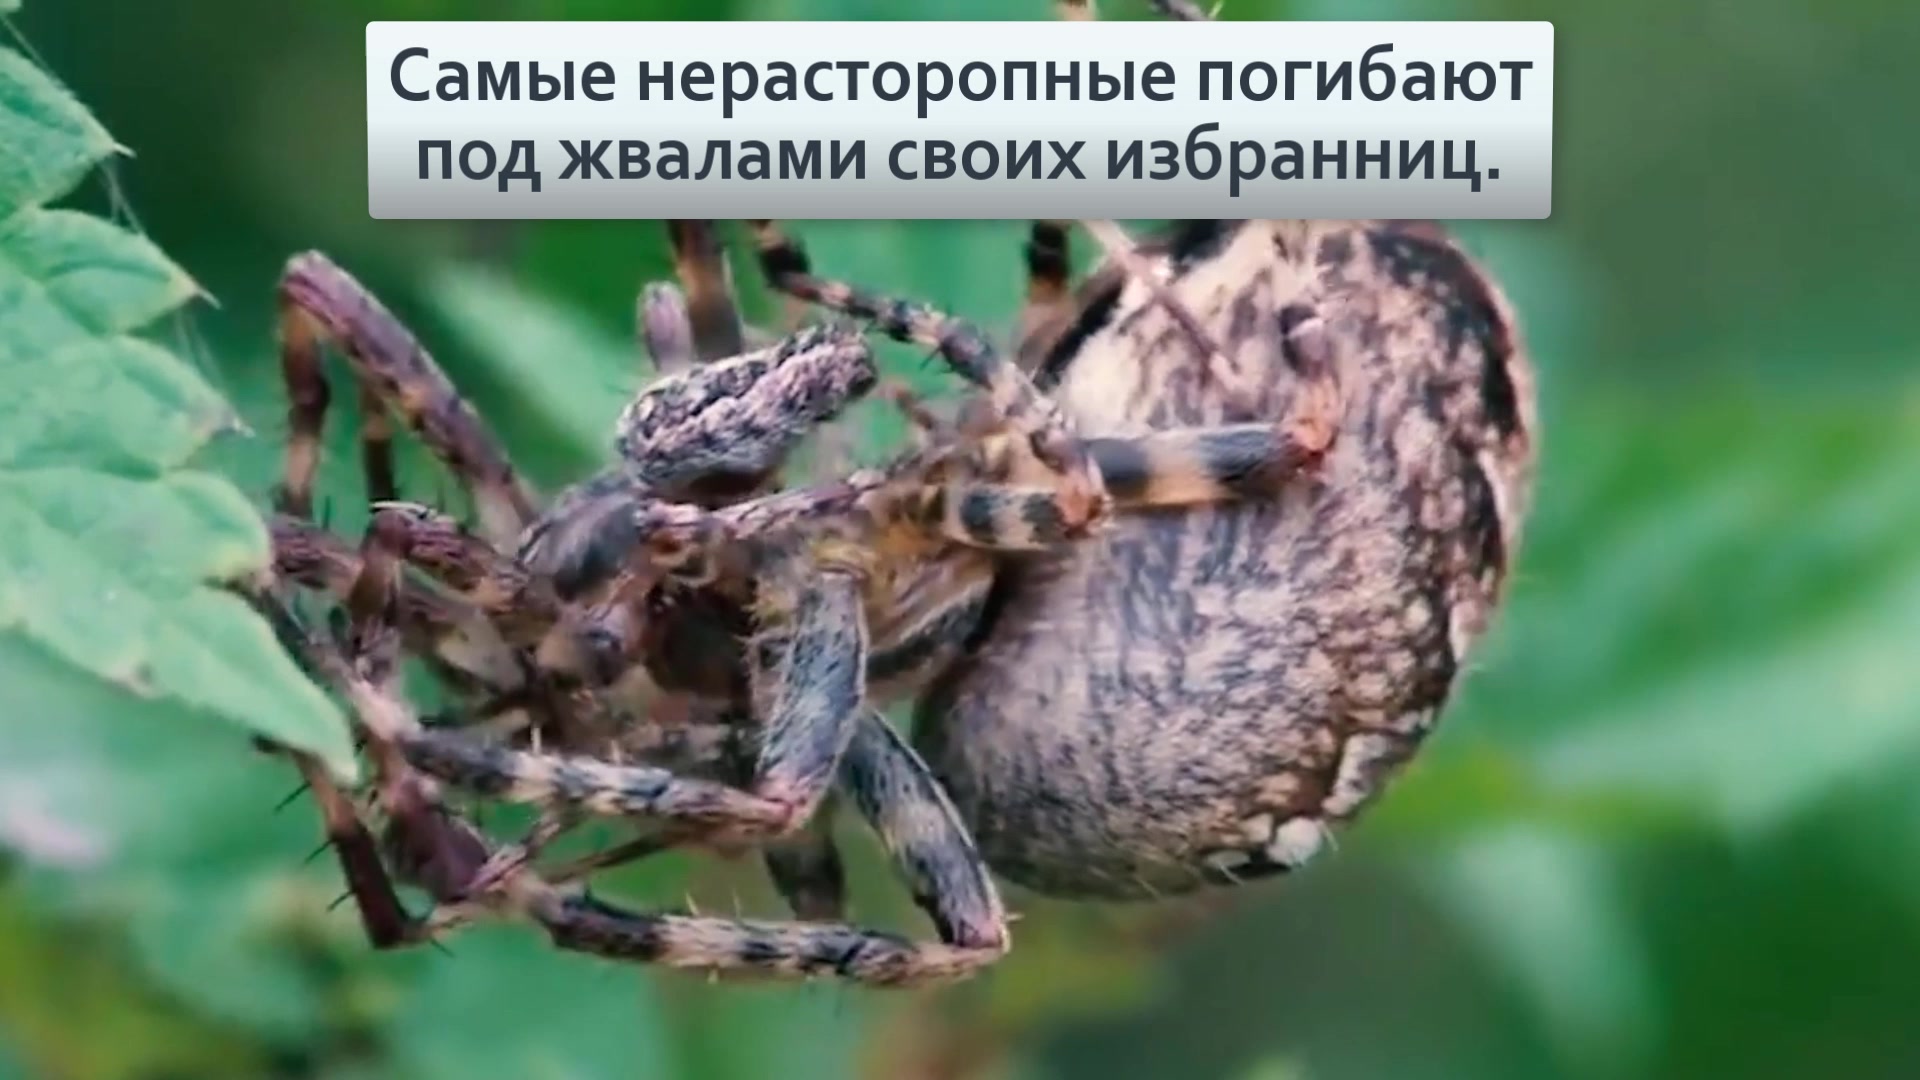 пауки крестовики фото в россии